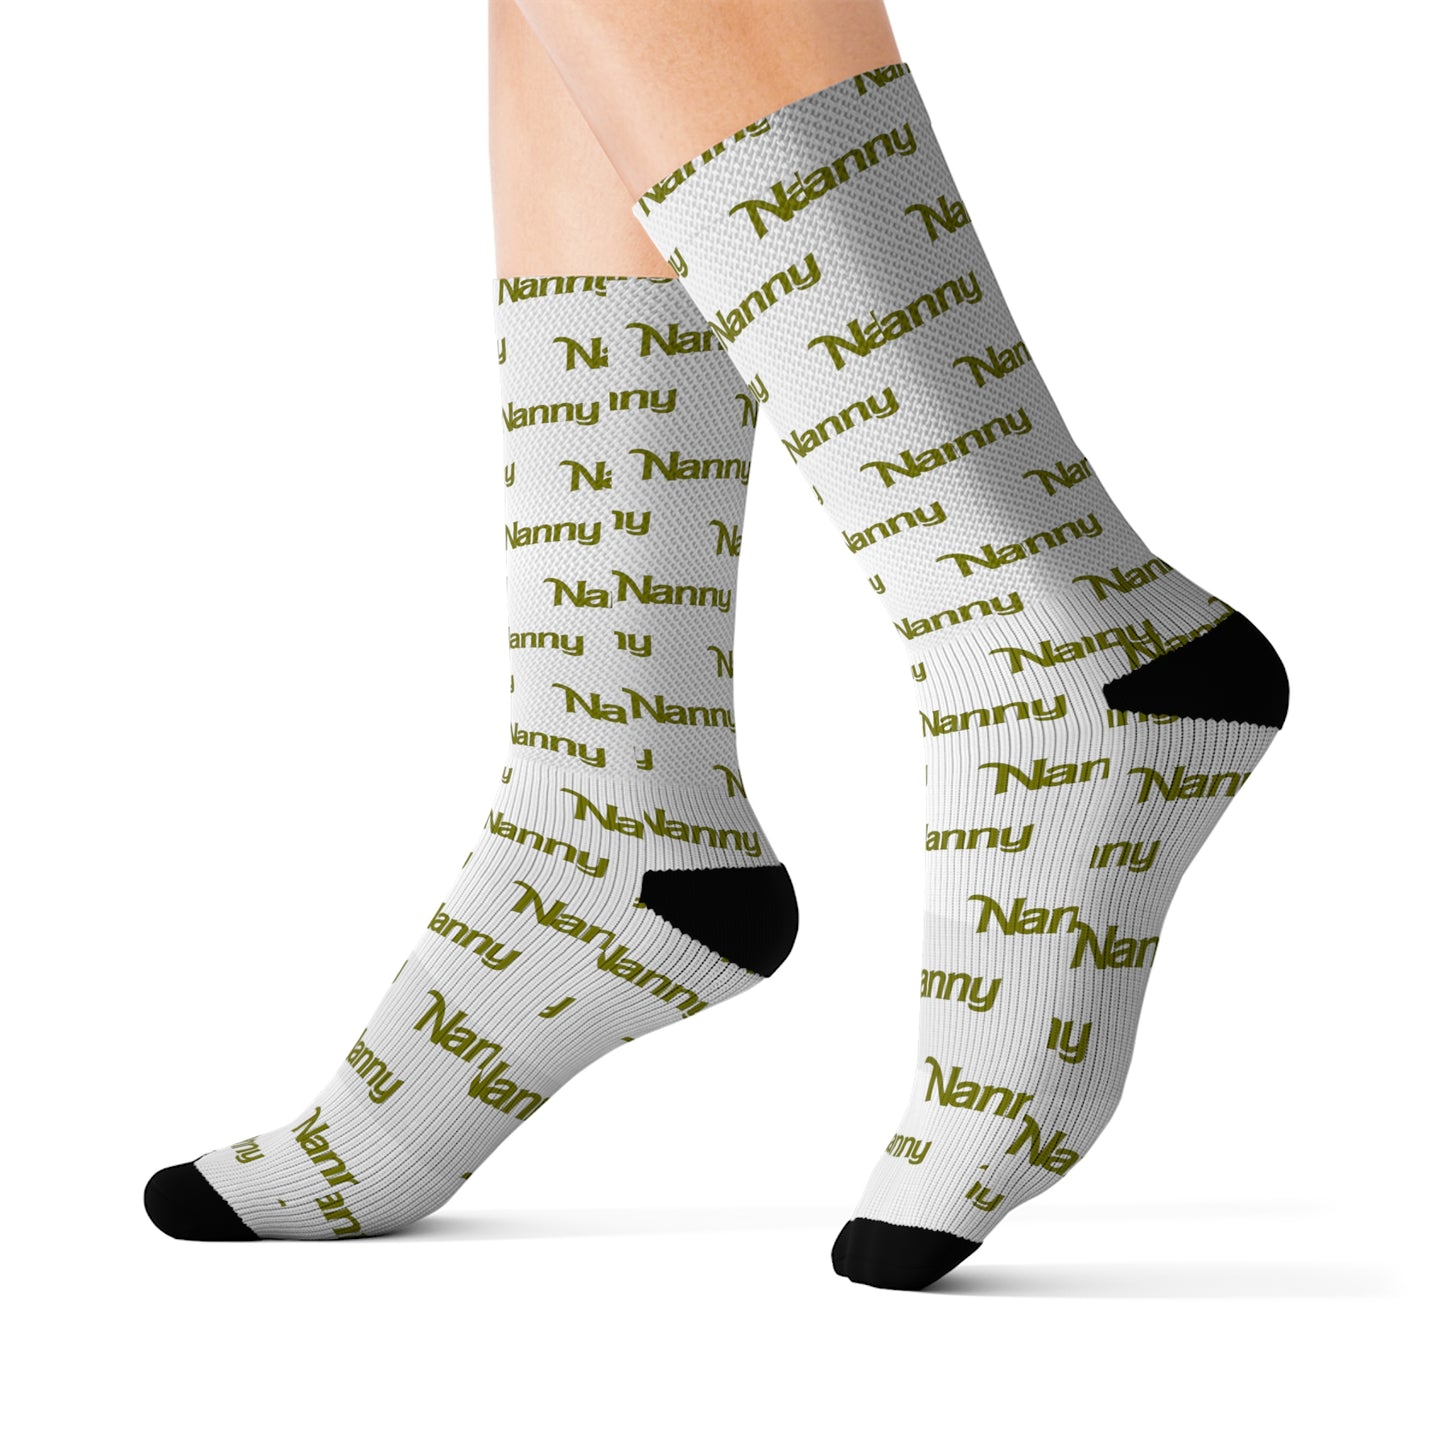 Nanny - Allover Print Socks - Olive Green